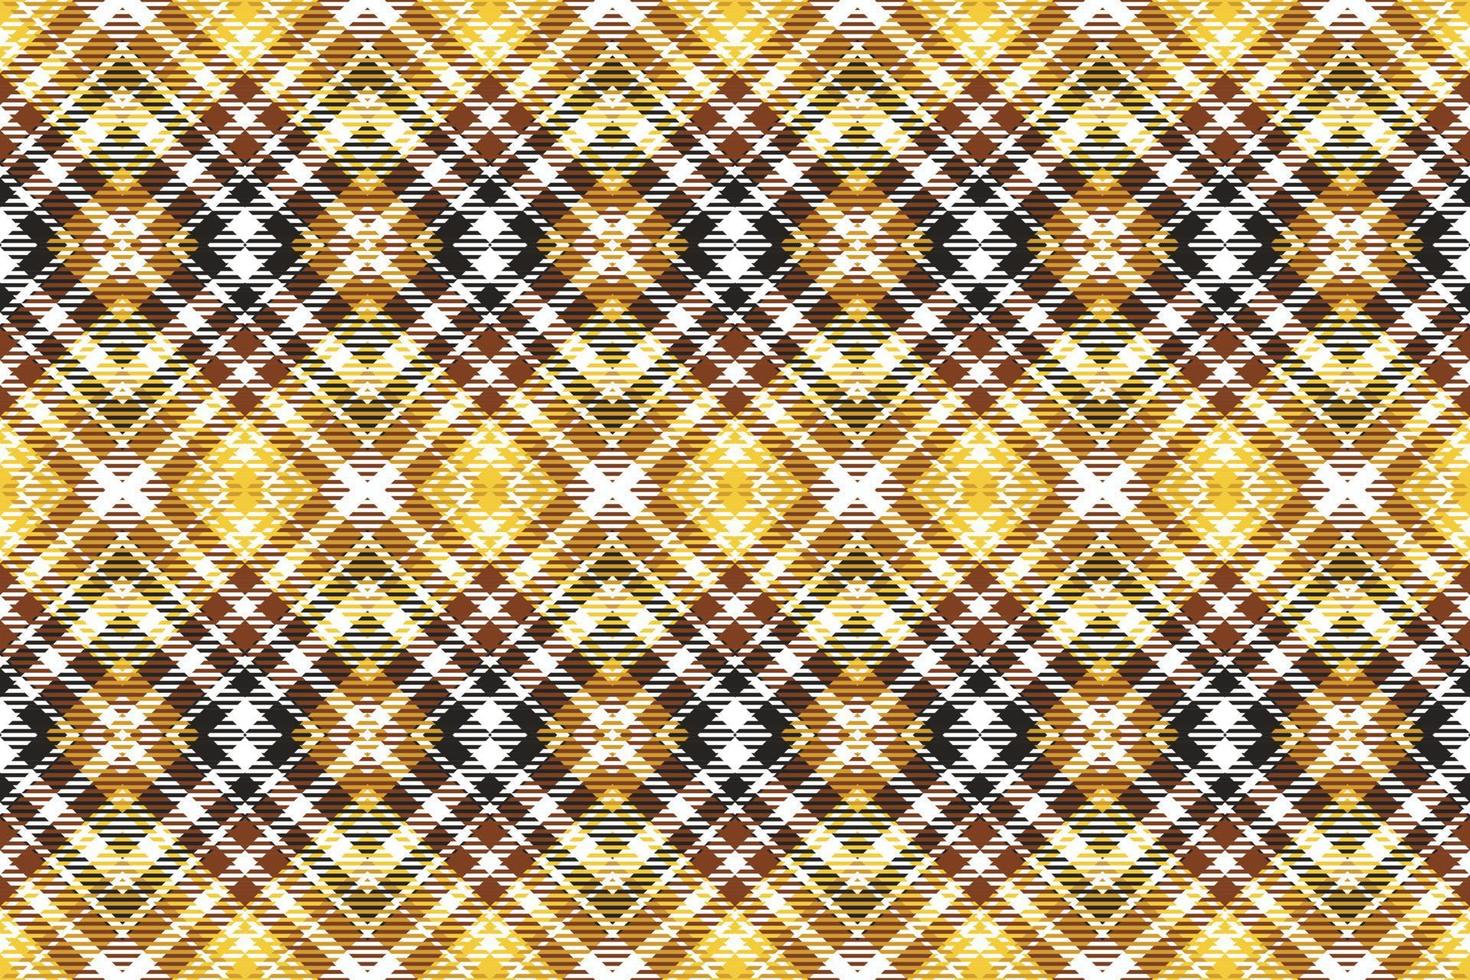 vérifier Écossais tartan modèle est une à motifs tissu qui consiste de sillonner franchi, horizontal et verticale bandes dans plusieurs couleurs.plaid sans couture pour écharpe, pyjama, couverture, couette, kilt grand châle. vecteur